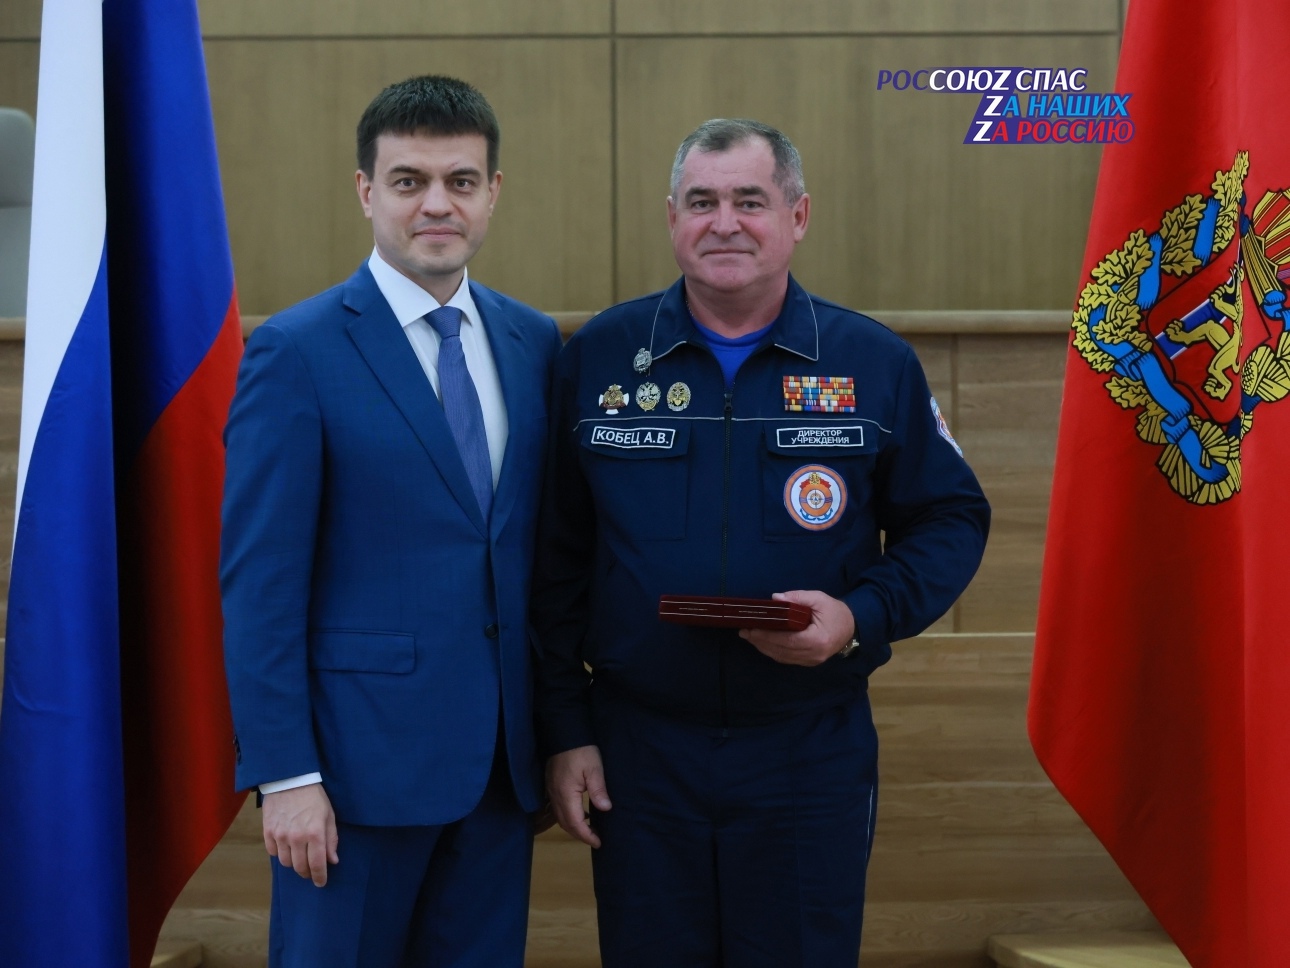 Александр Кобец – Заслуженный спасатель Российской Федерации